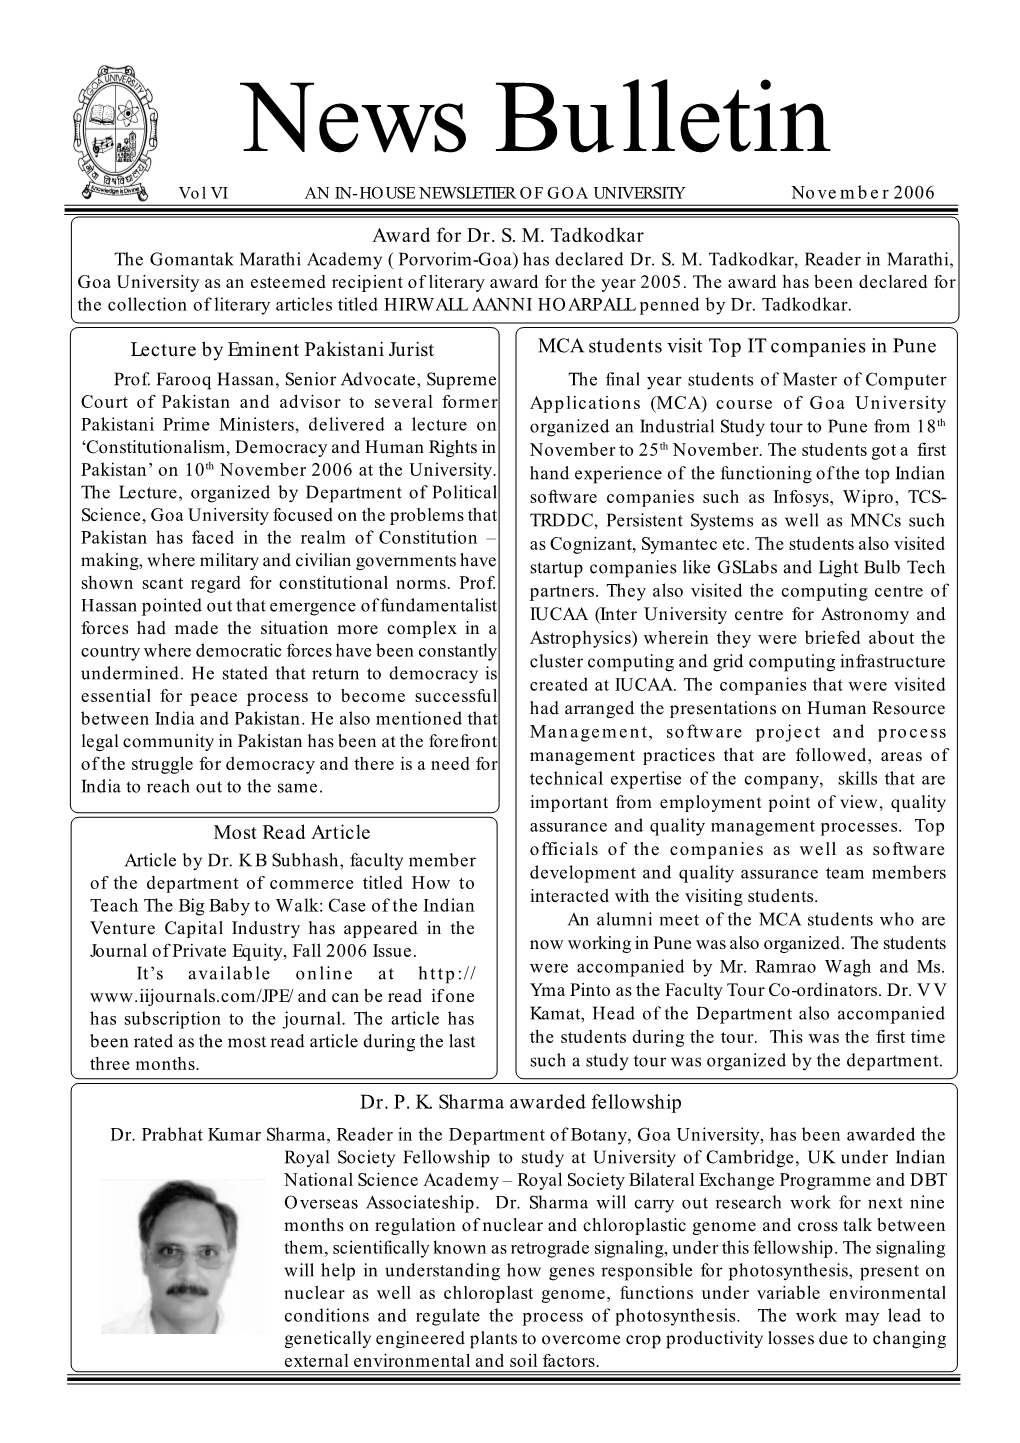 News Bulletin Vol VI an IN-HOUSE NEWSLETTER of GOA UNIVERSITY November 2006